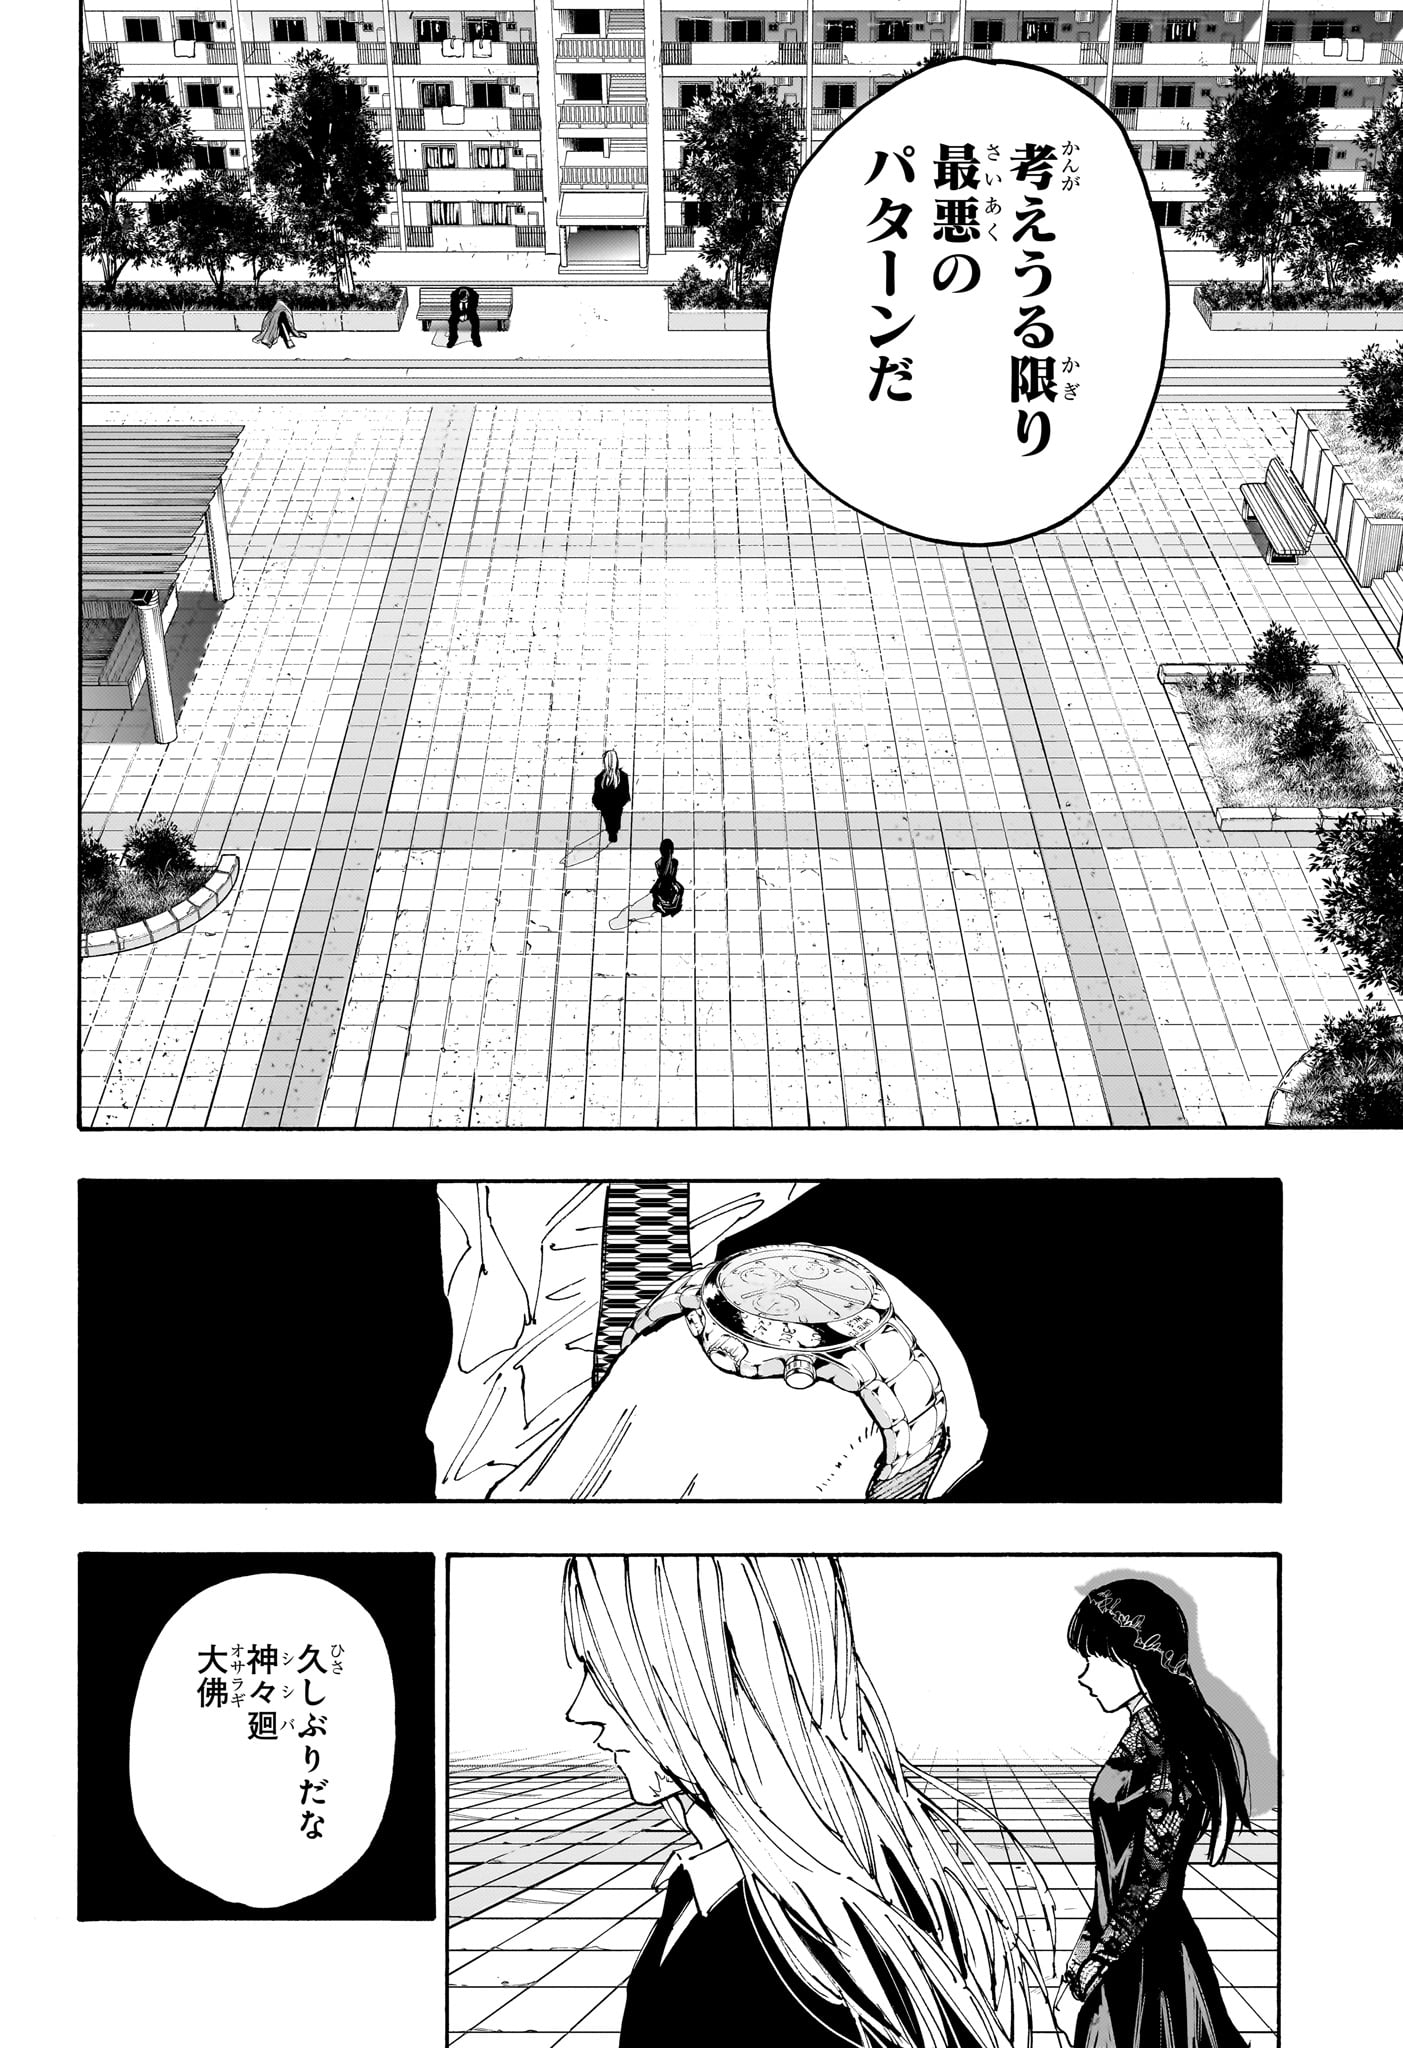 Sakamoto Days - Chapter 168 - Page 18